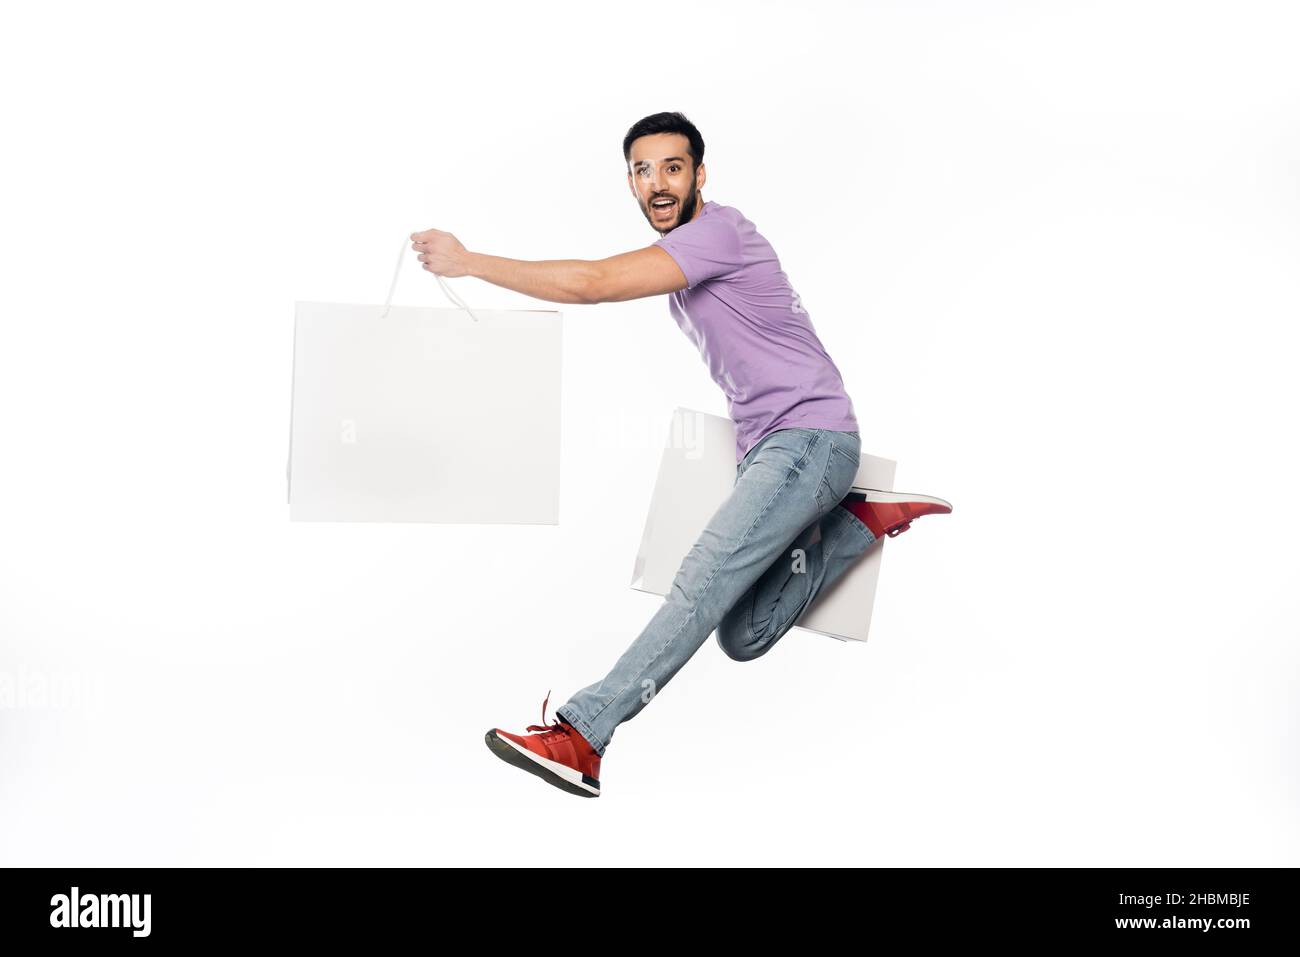 homme heureux en jeans et t-shirt violet lévitant avec des sacs de shopping isolés sur blanc Banque D'Images